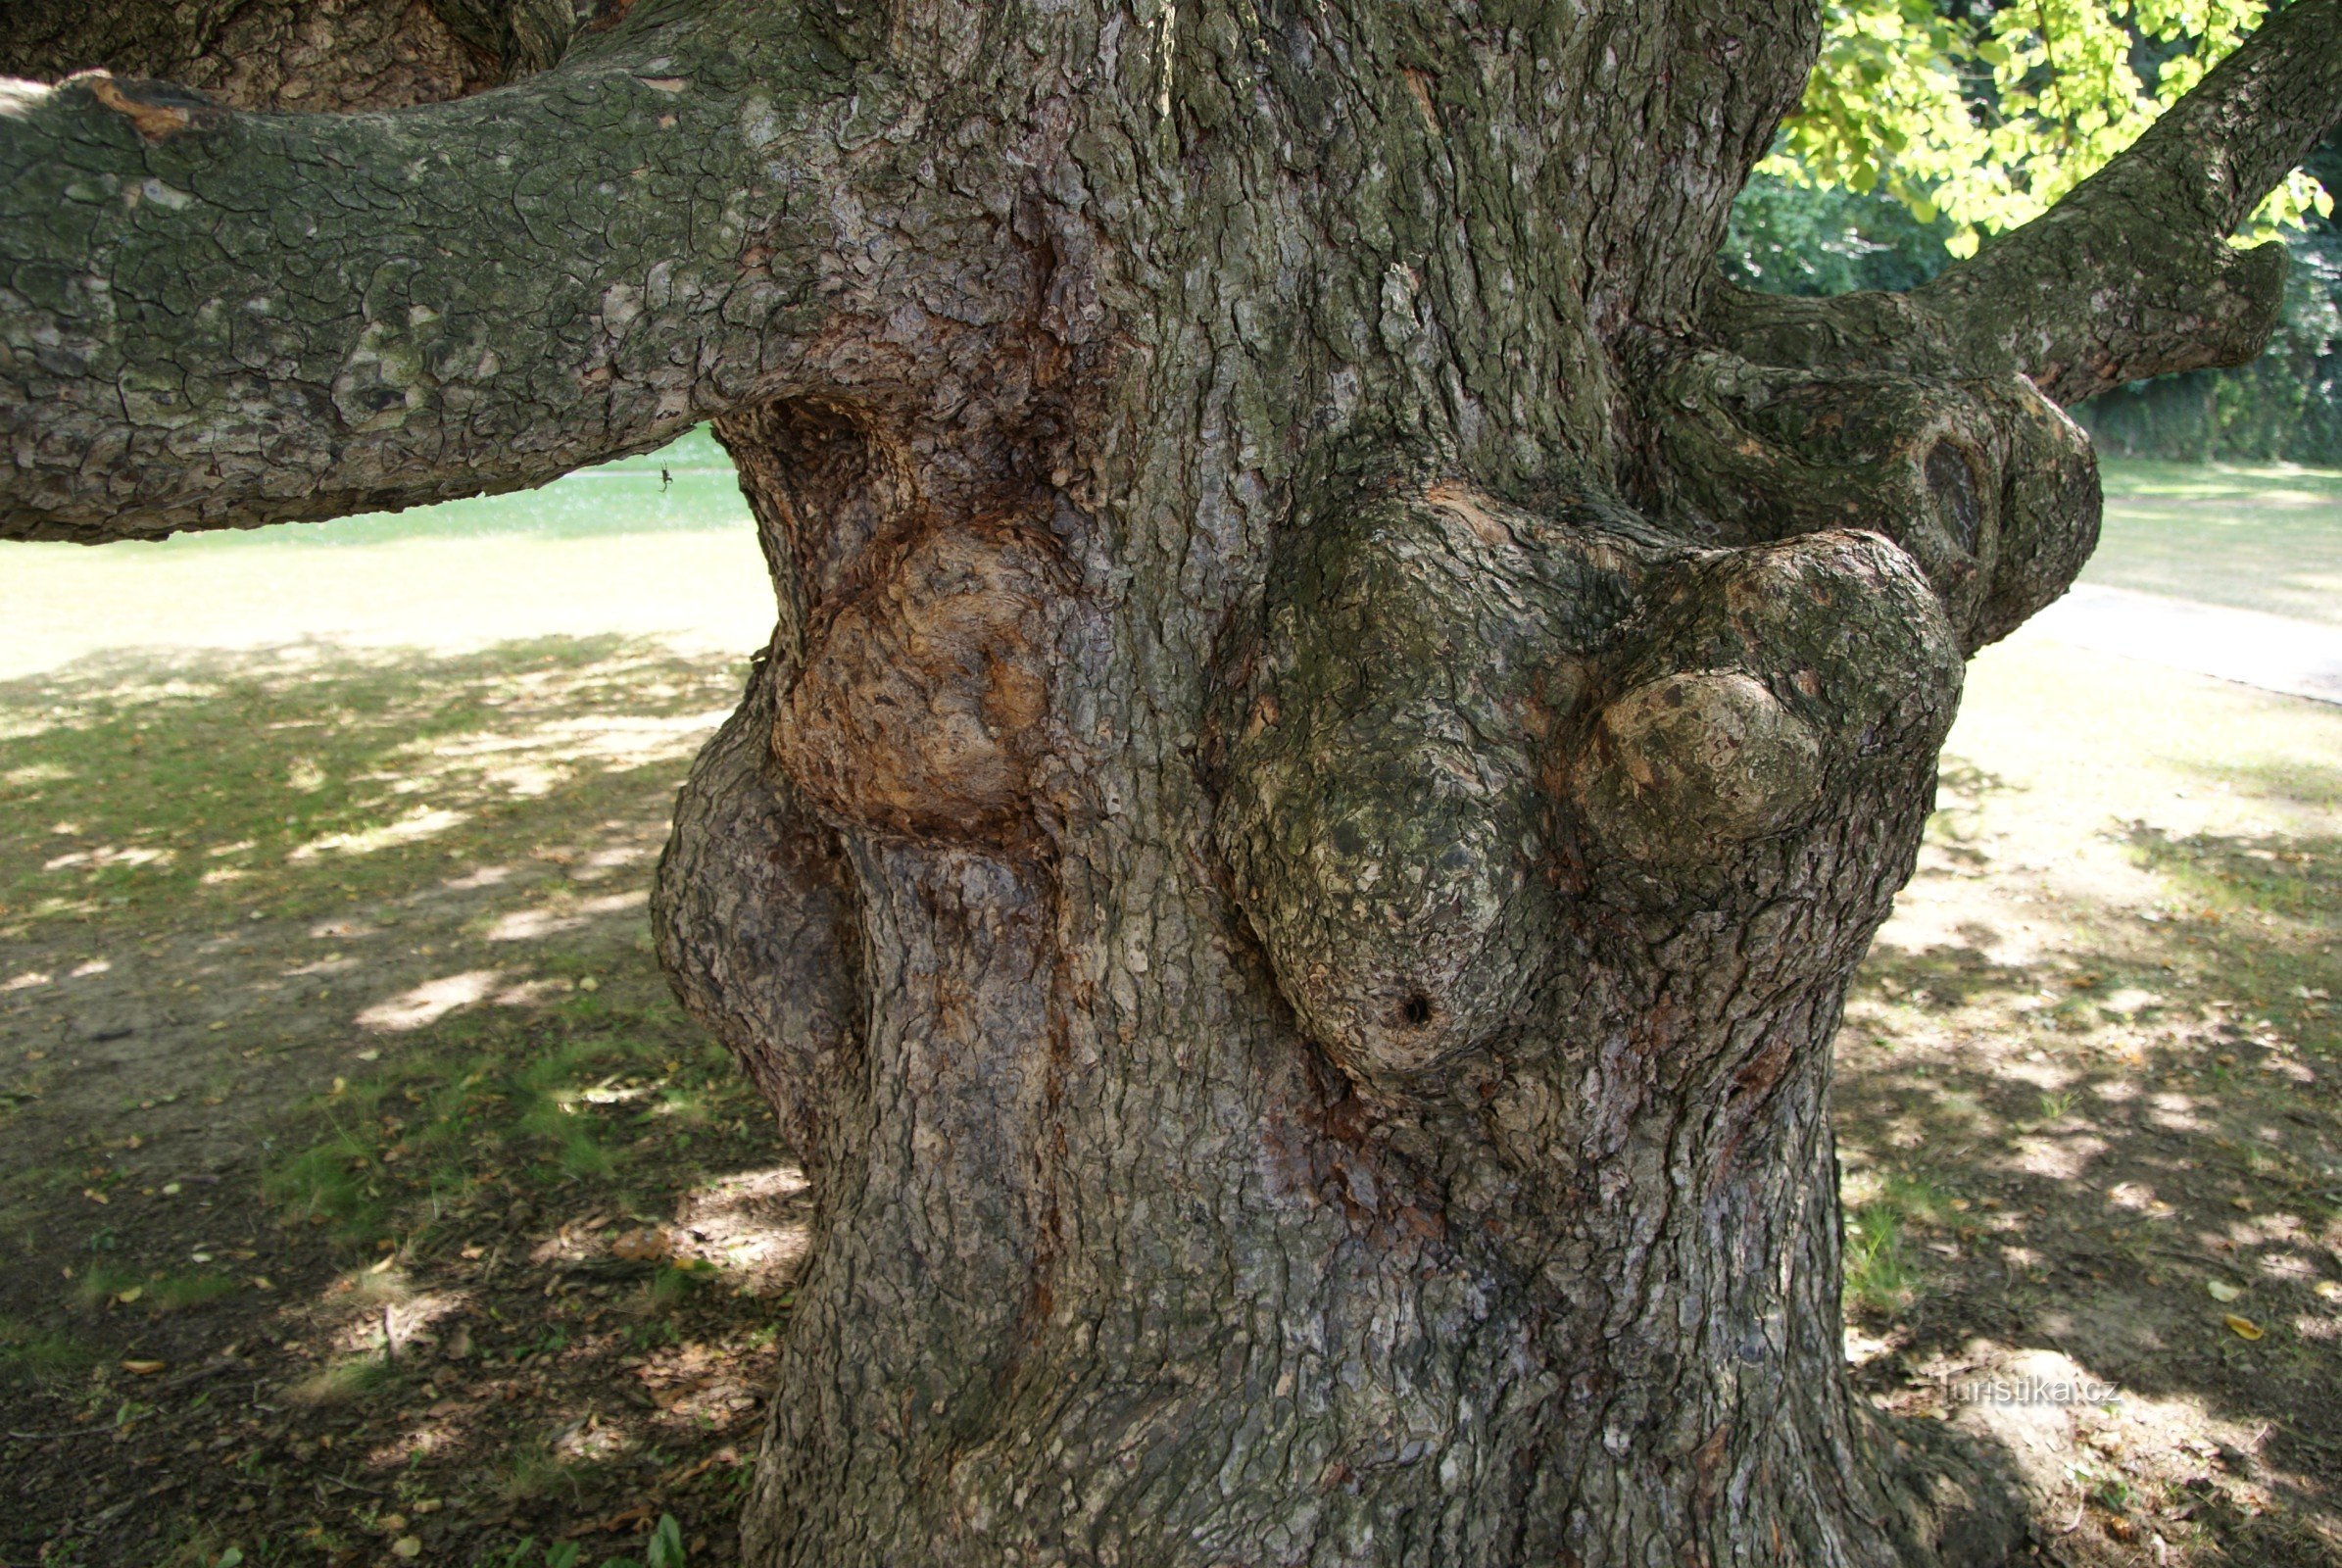 Boskovice - cây cổ tích trong vườn lâu đài (cây phỉ Thổ Nhĩ Kỳ)